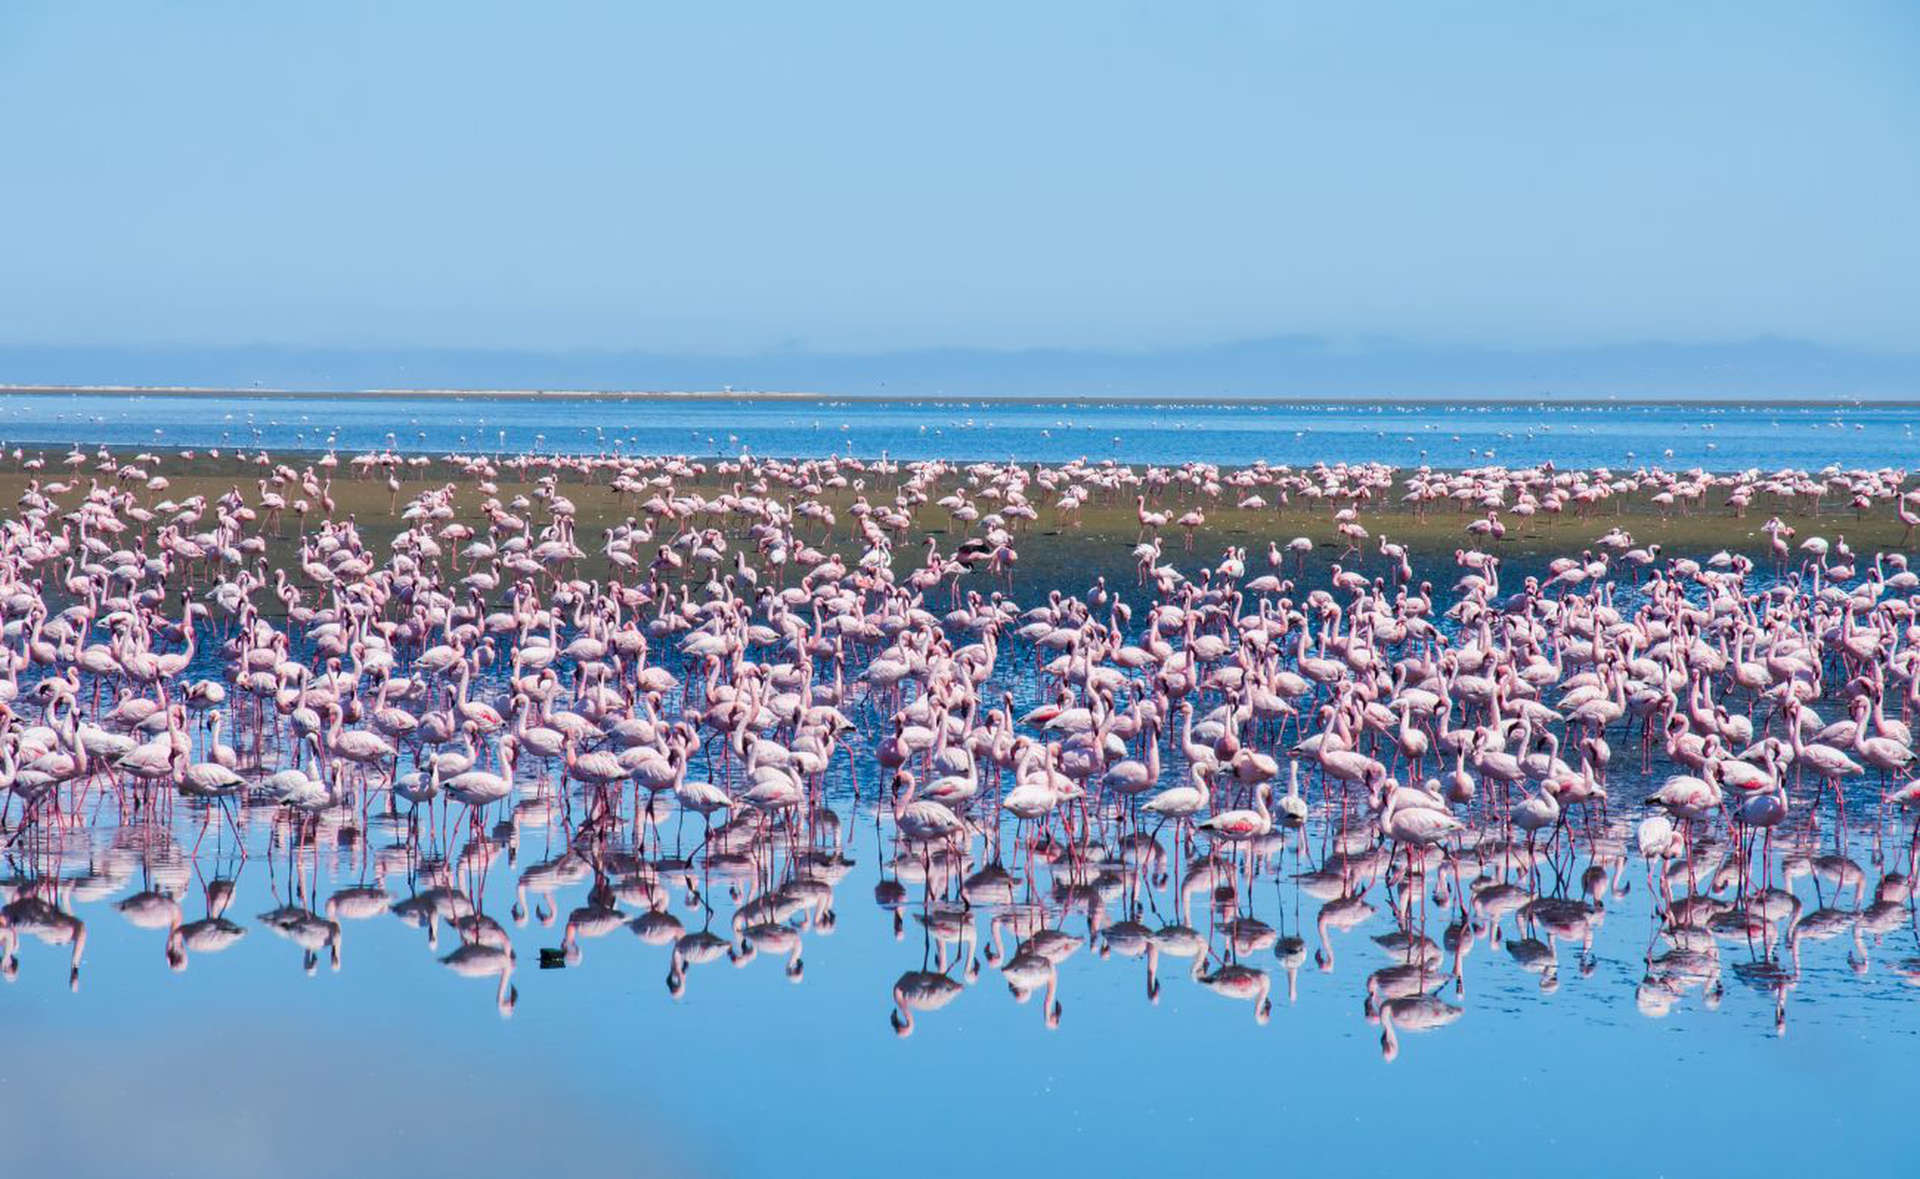 شاهد الطيور الوردية المذهلة في ناميبيا